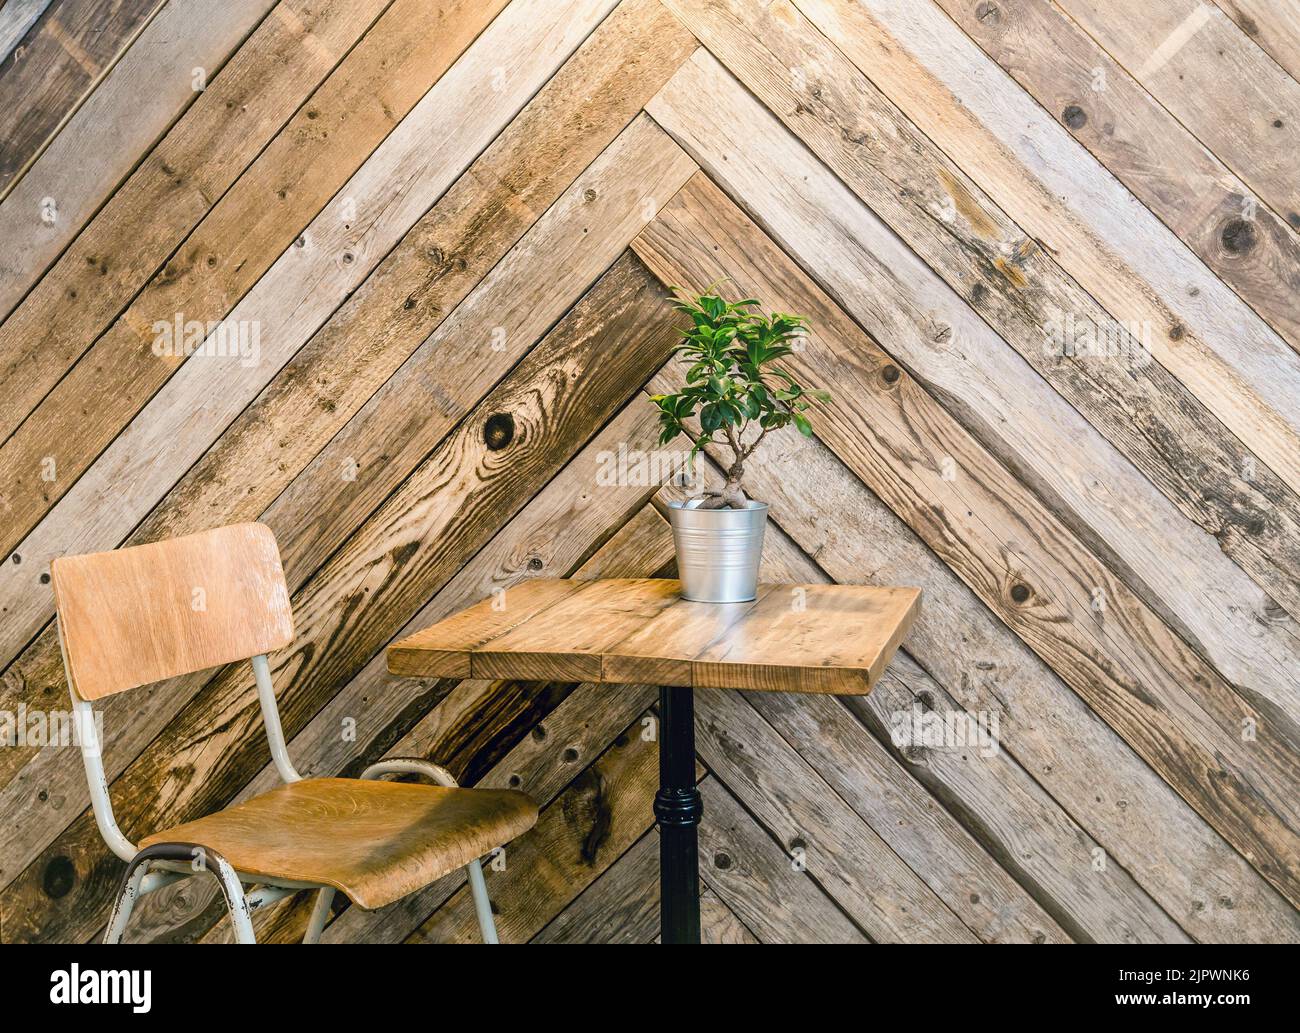 Riutilizzo di vecchie tavole di legno per creare una parete a spina di pesce o a spina di pesce in casa. Accento arredamento casa alternativo. Foto Stock